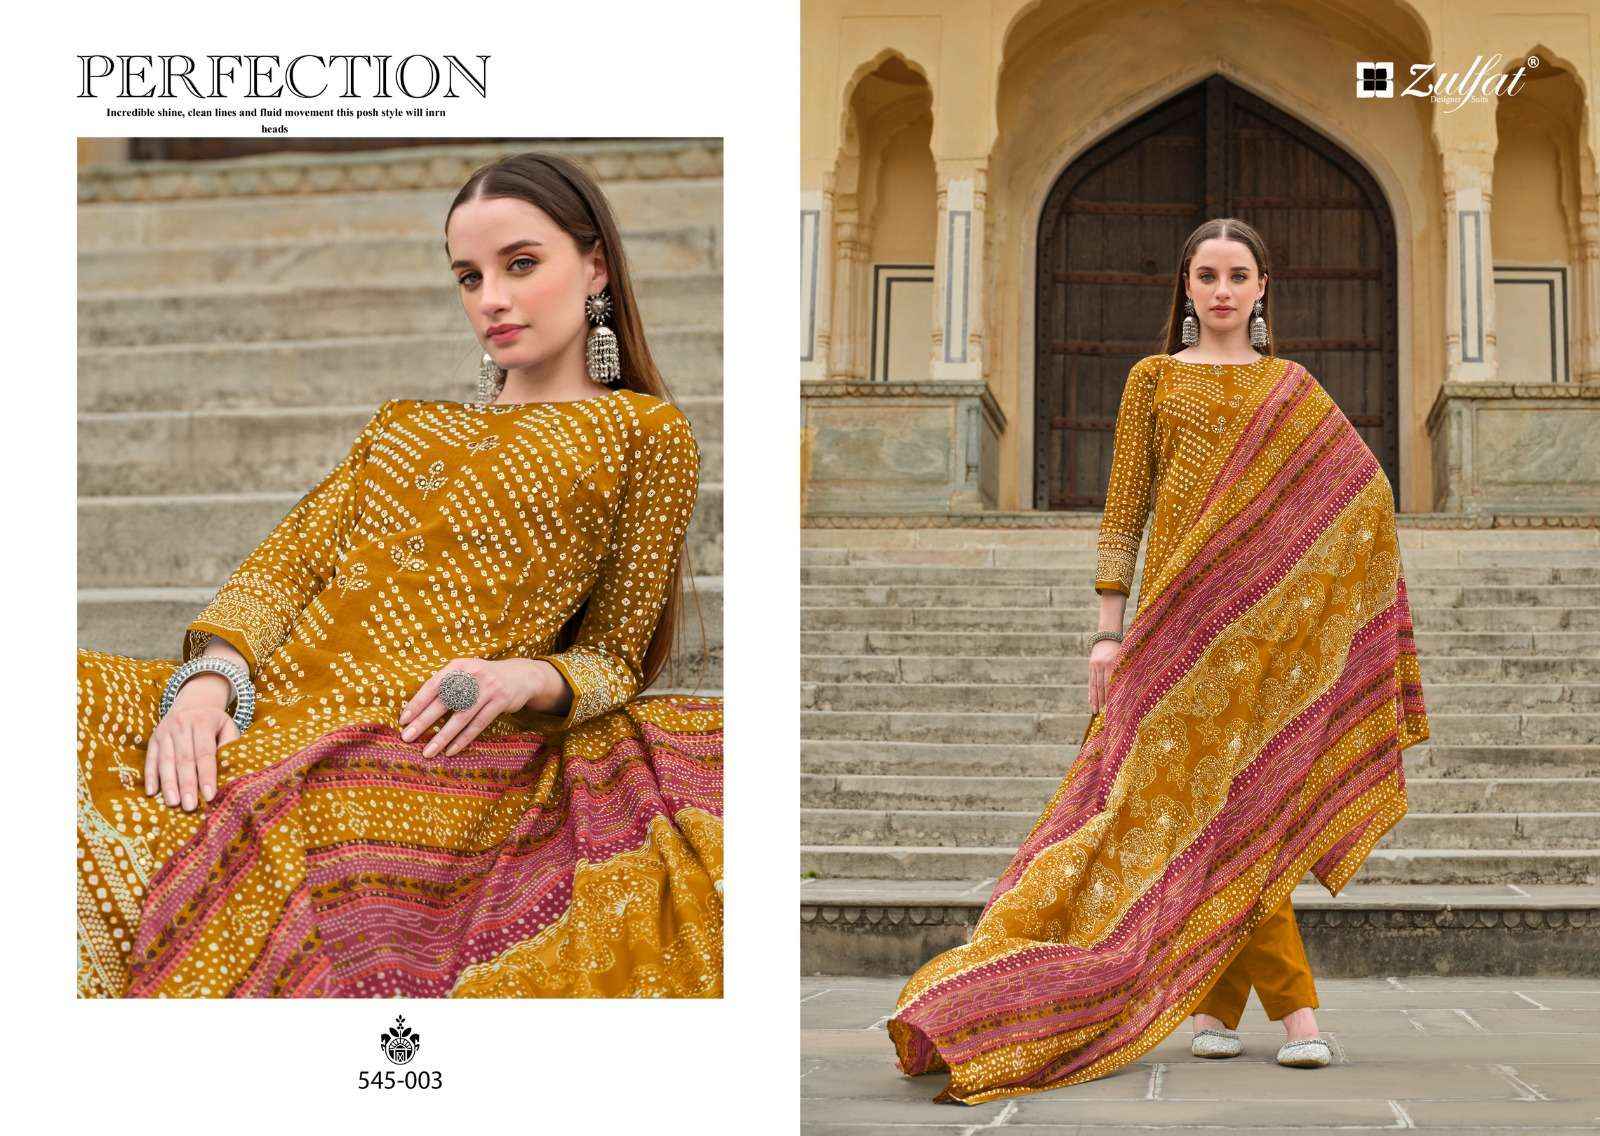 Zulfat Tania Cotton Dress Material 6 pcs Catalogue